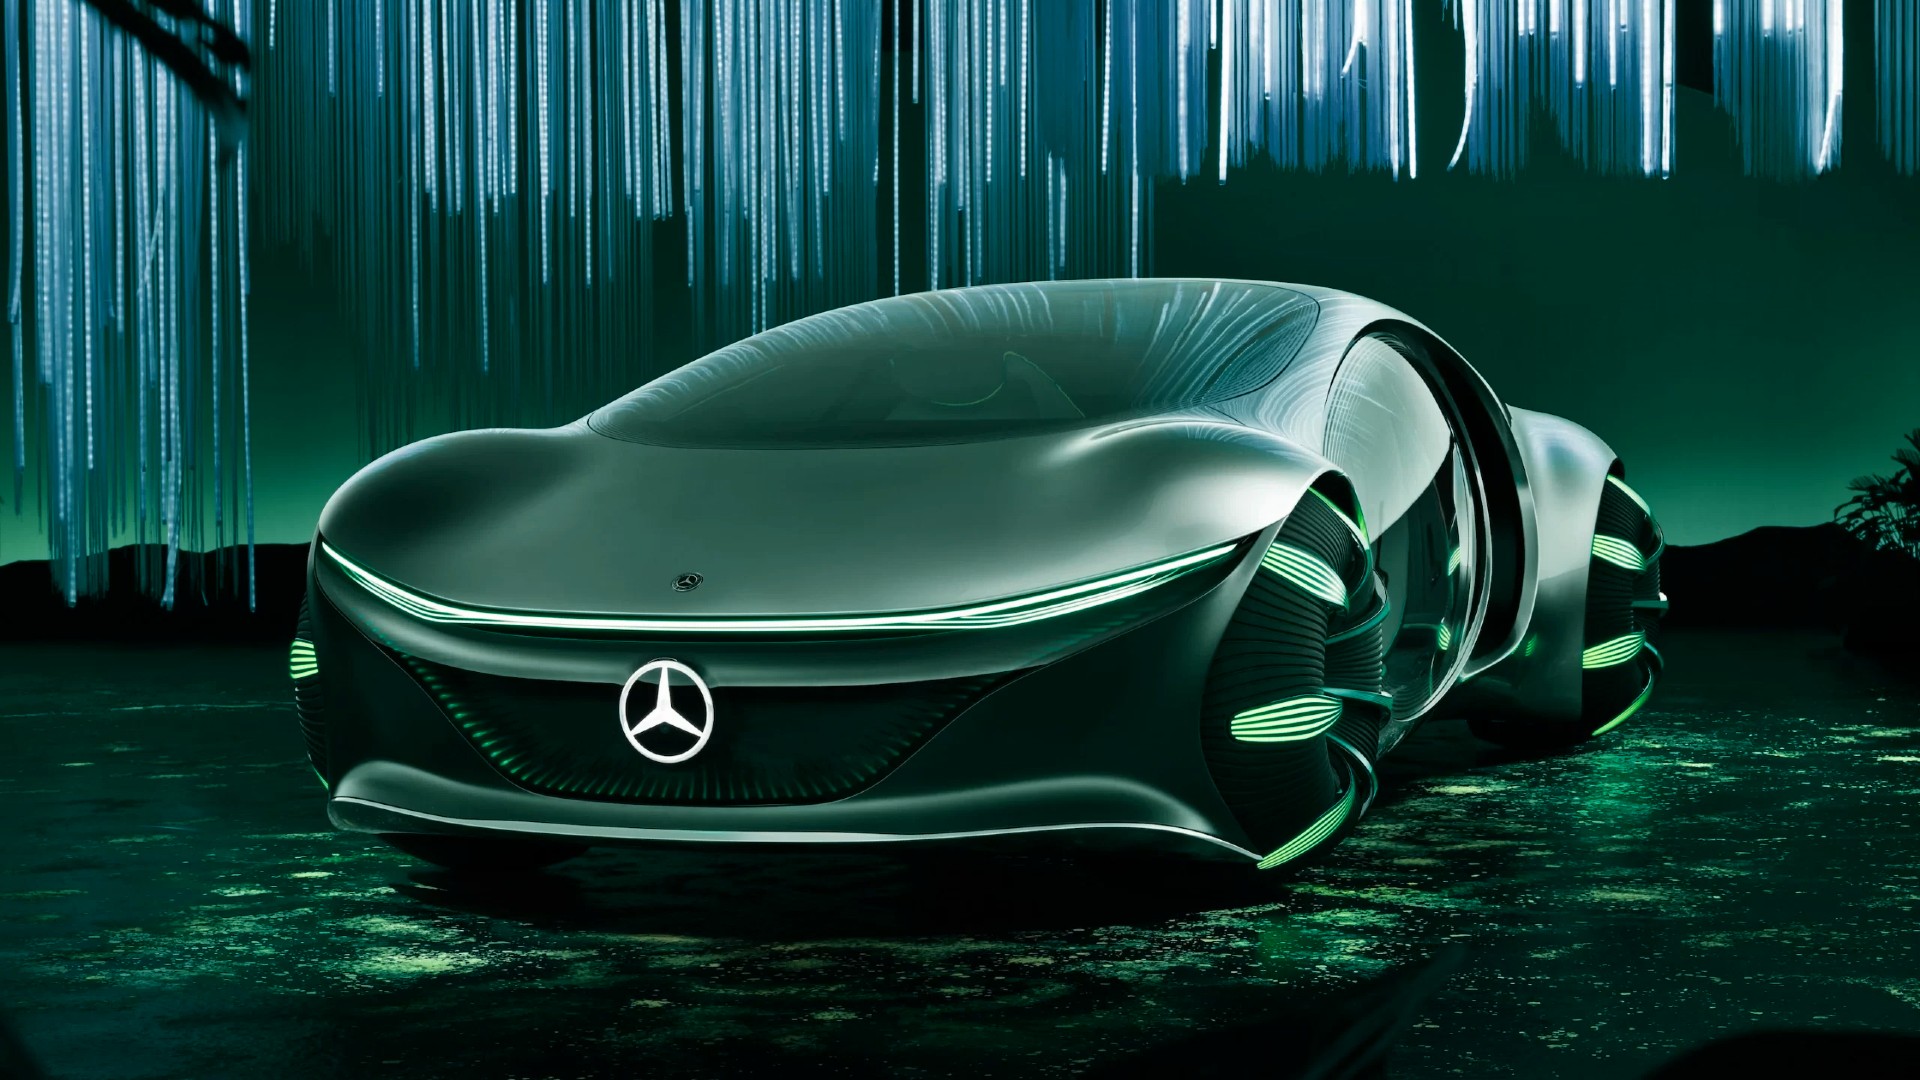 Mercedes-Benz joins Aura Blockchain Consortium as fifth Founding